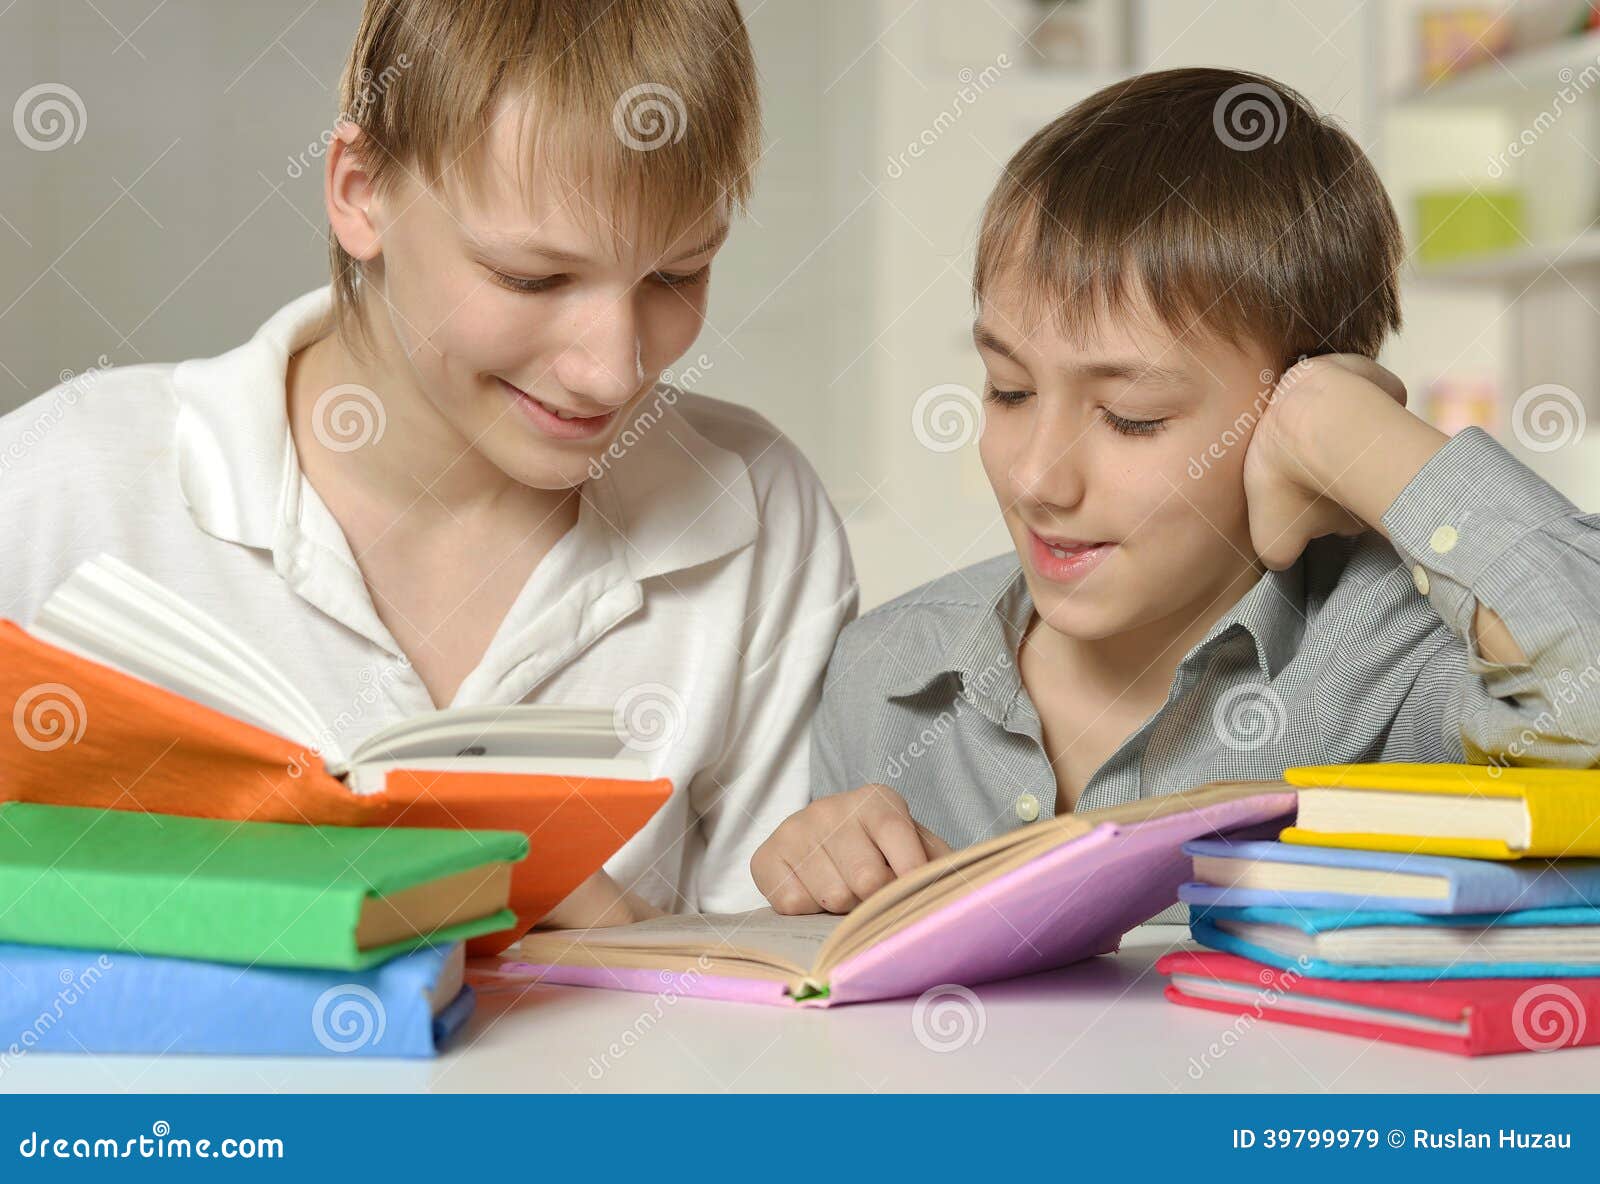 Брат помогает уроки. Братья делают уроки. Брат делает домашнее задание. Брат помогает делать уроки. Младший брат делает уроки.